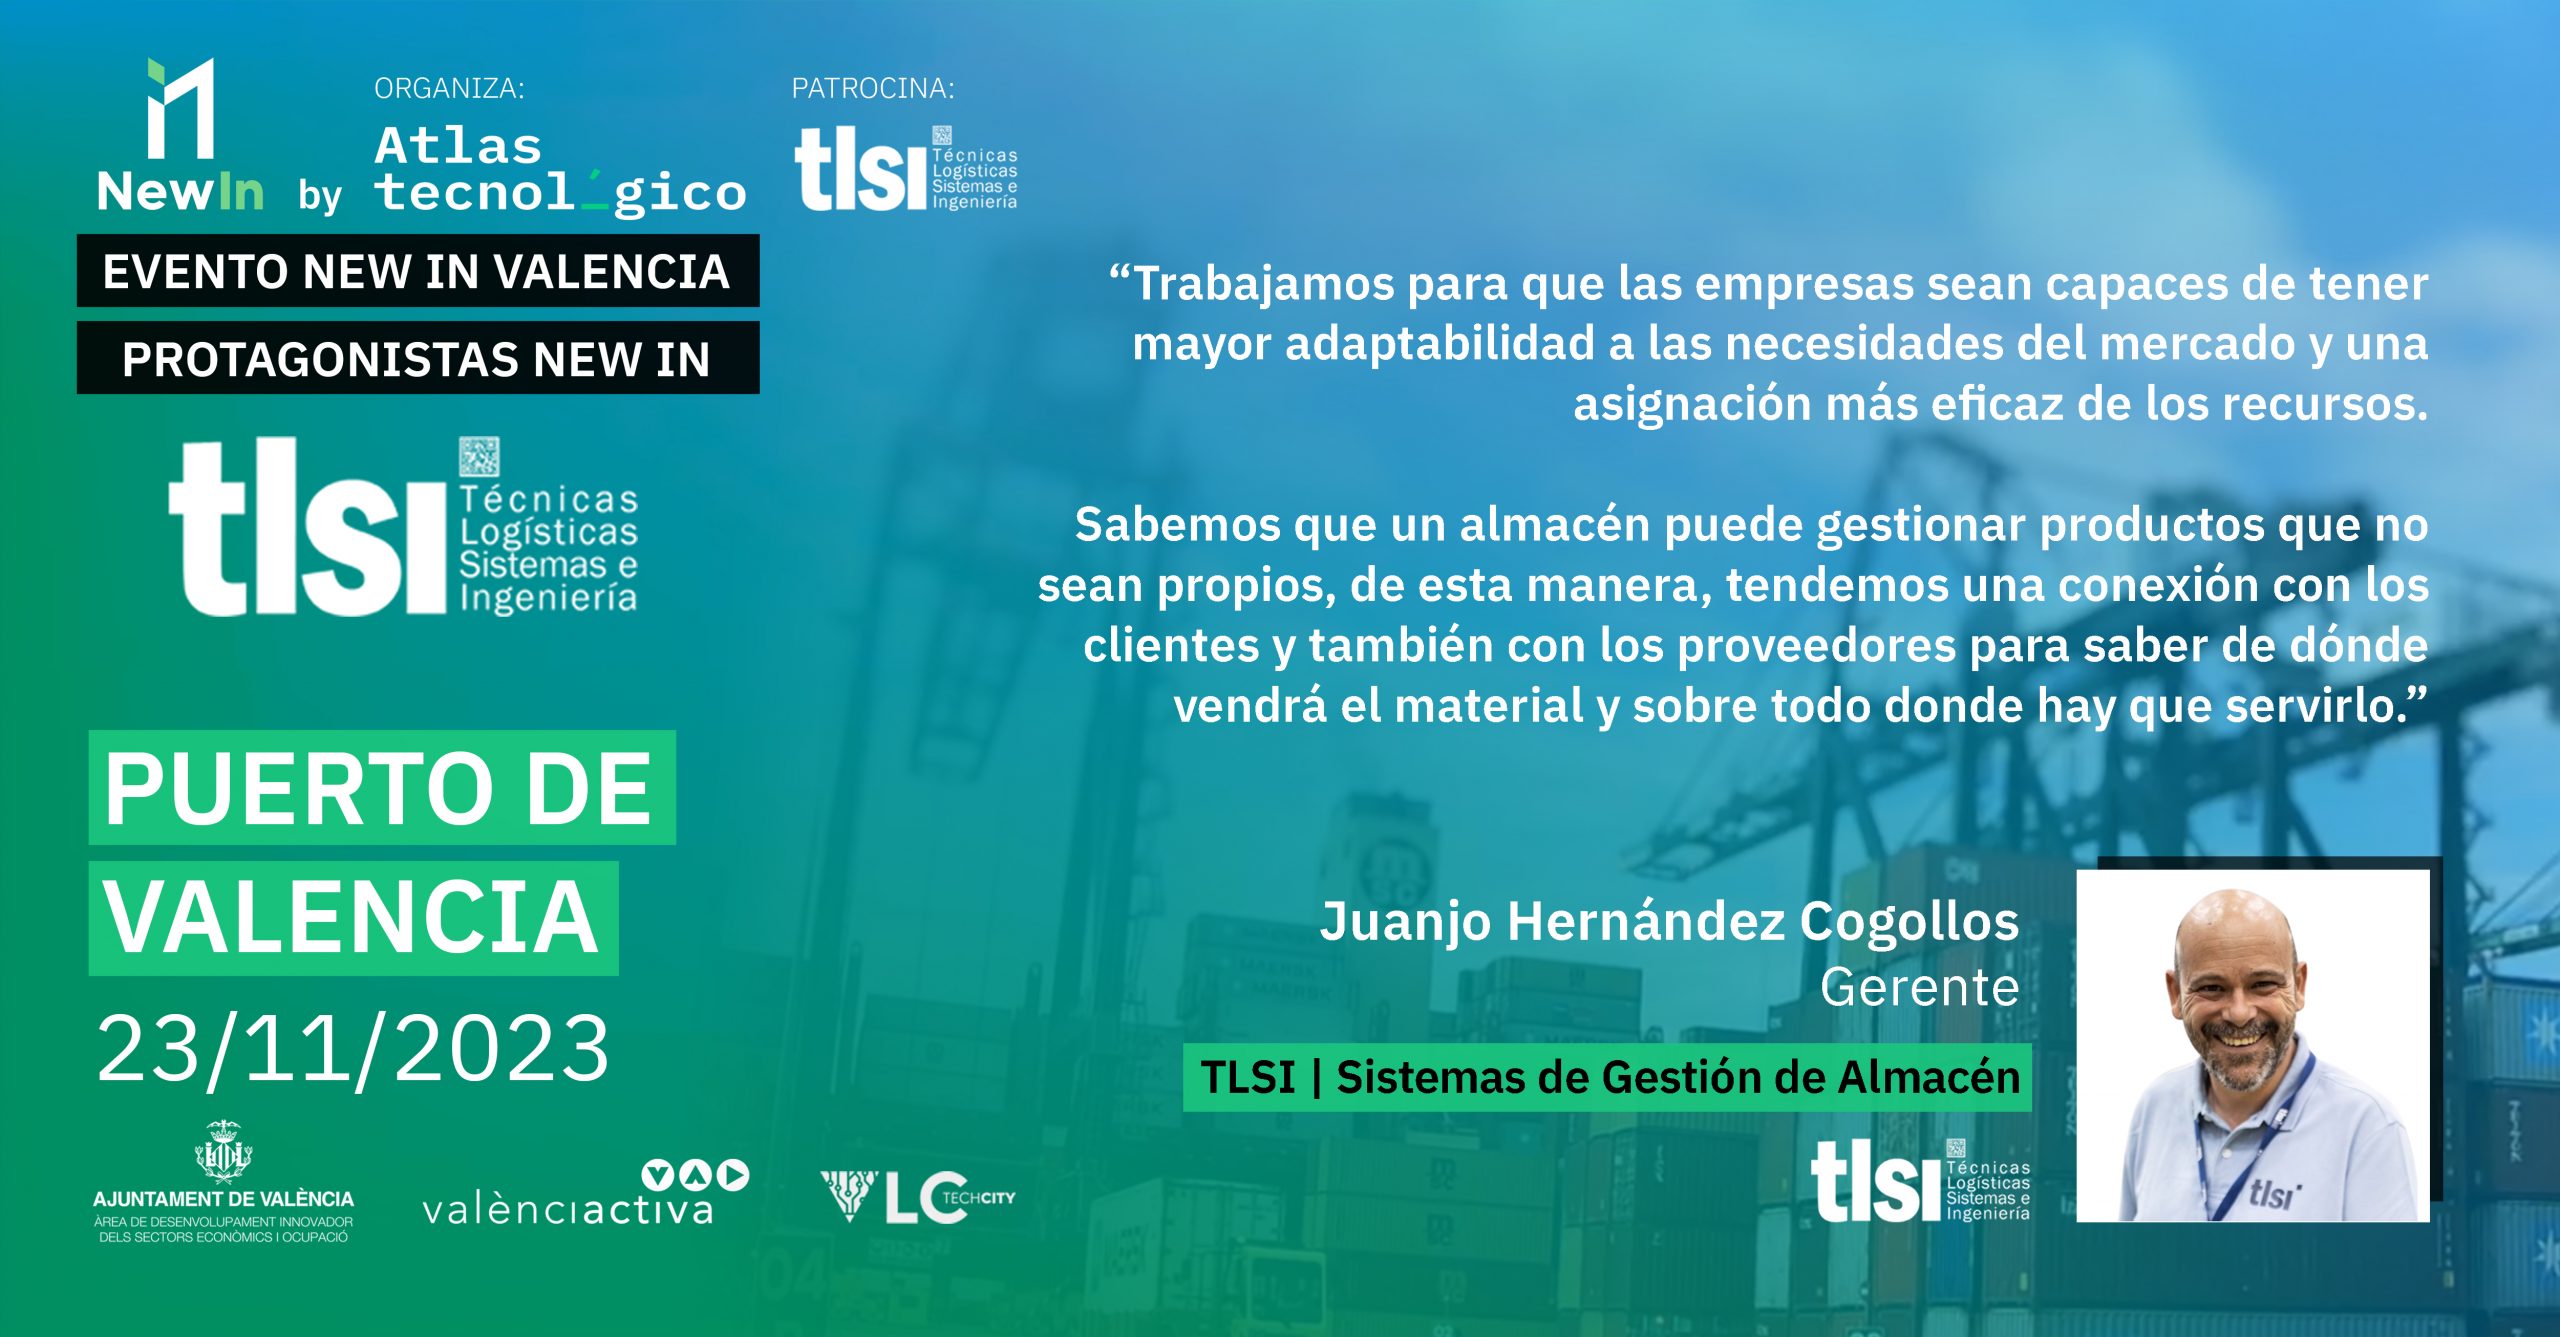 TLSI, implantando mejoras para la optimización de procesos logísticos, patrocina New In Valencia